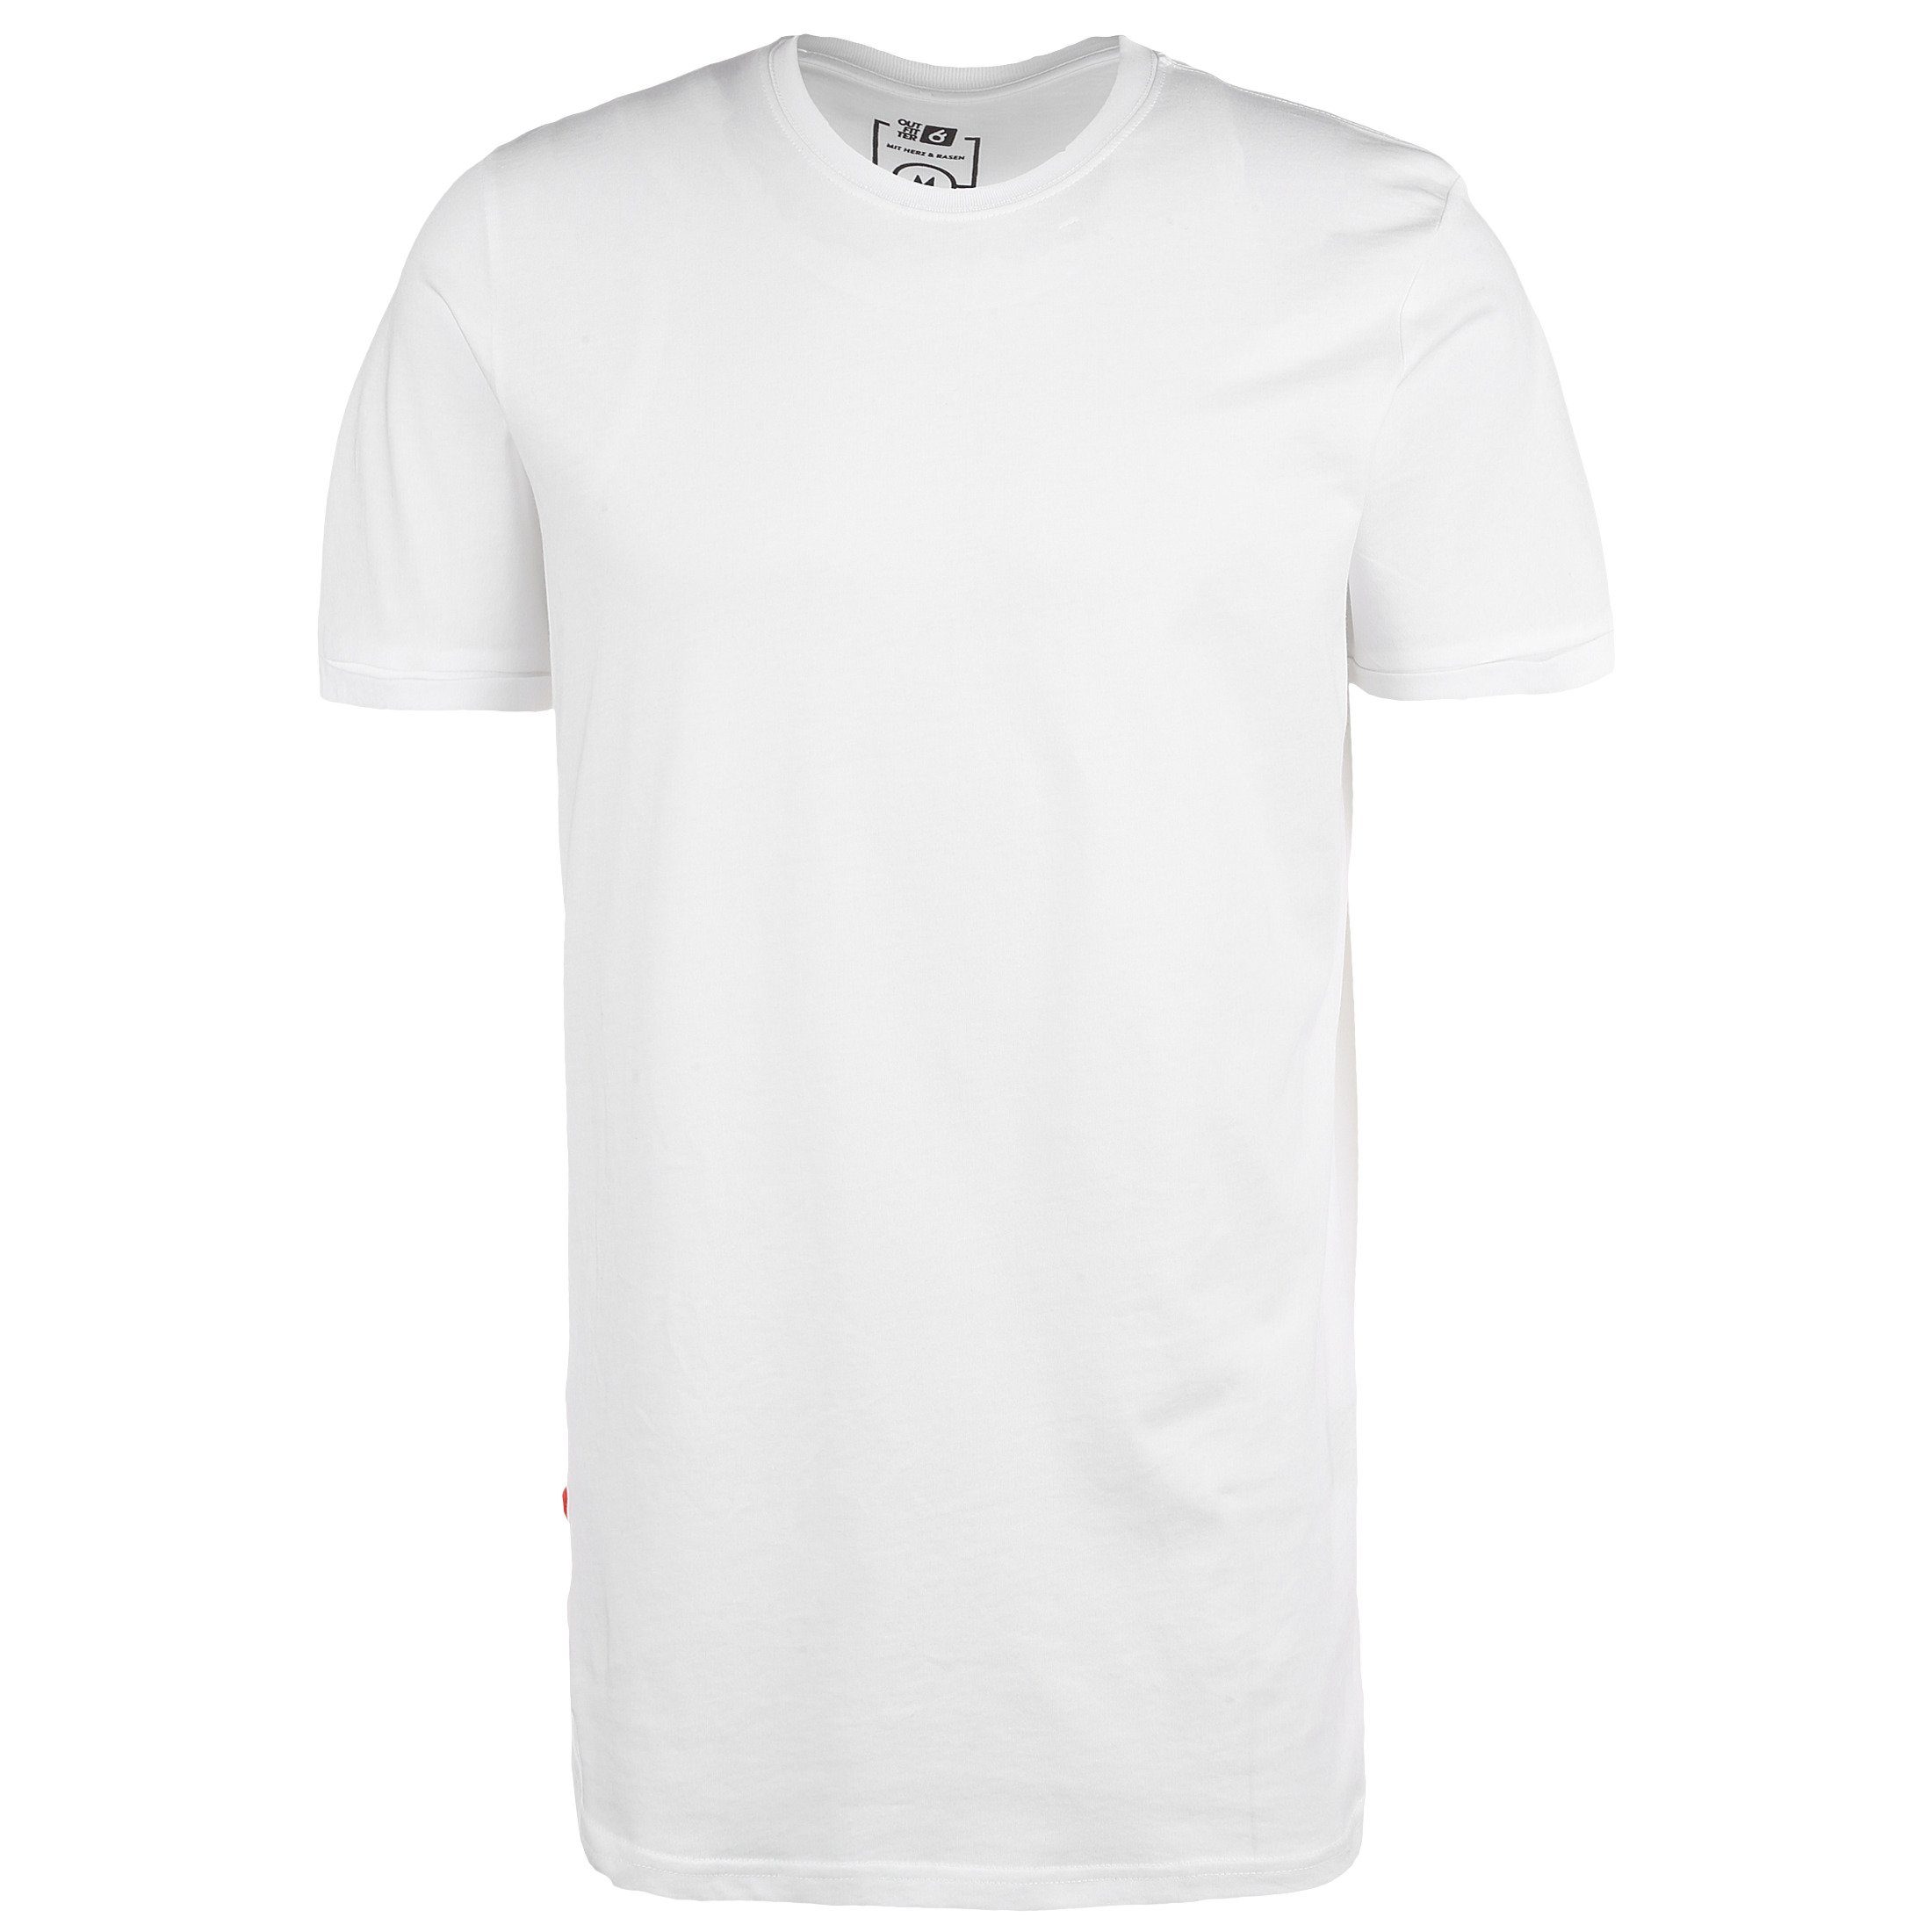 Outfitter T-Shirt Frankfurt Kickt Alles Longcut T-Shirt Herren